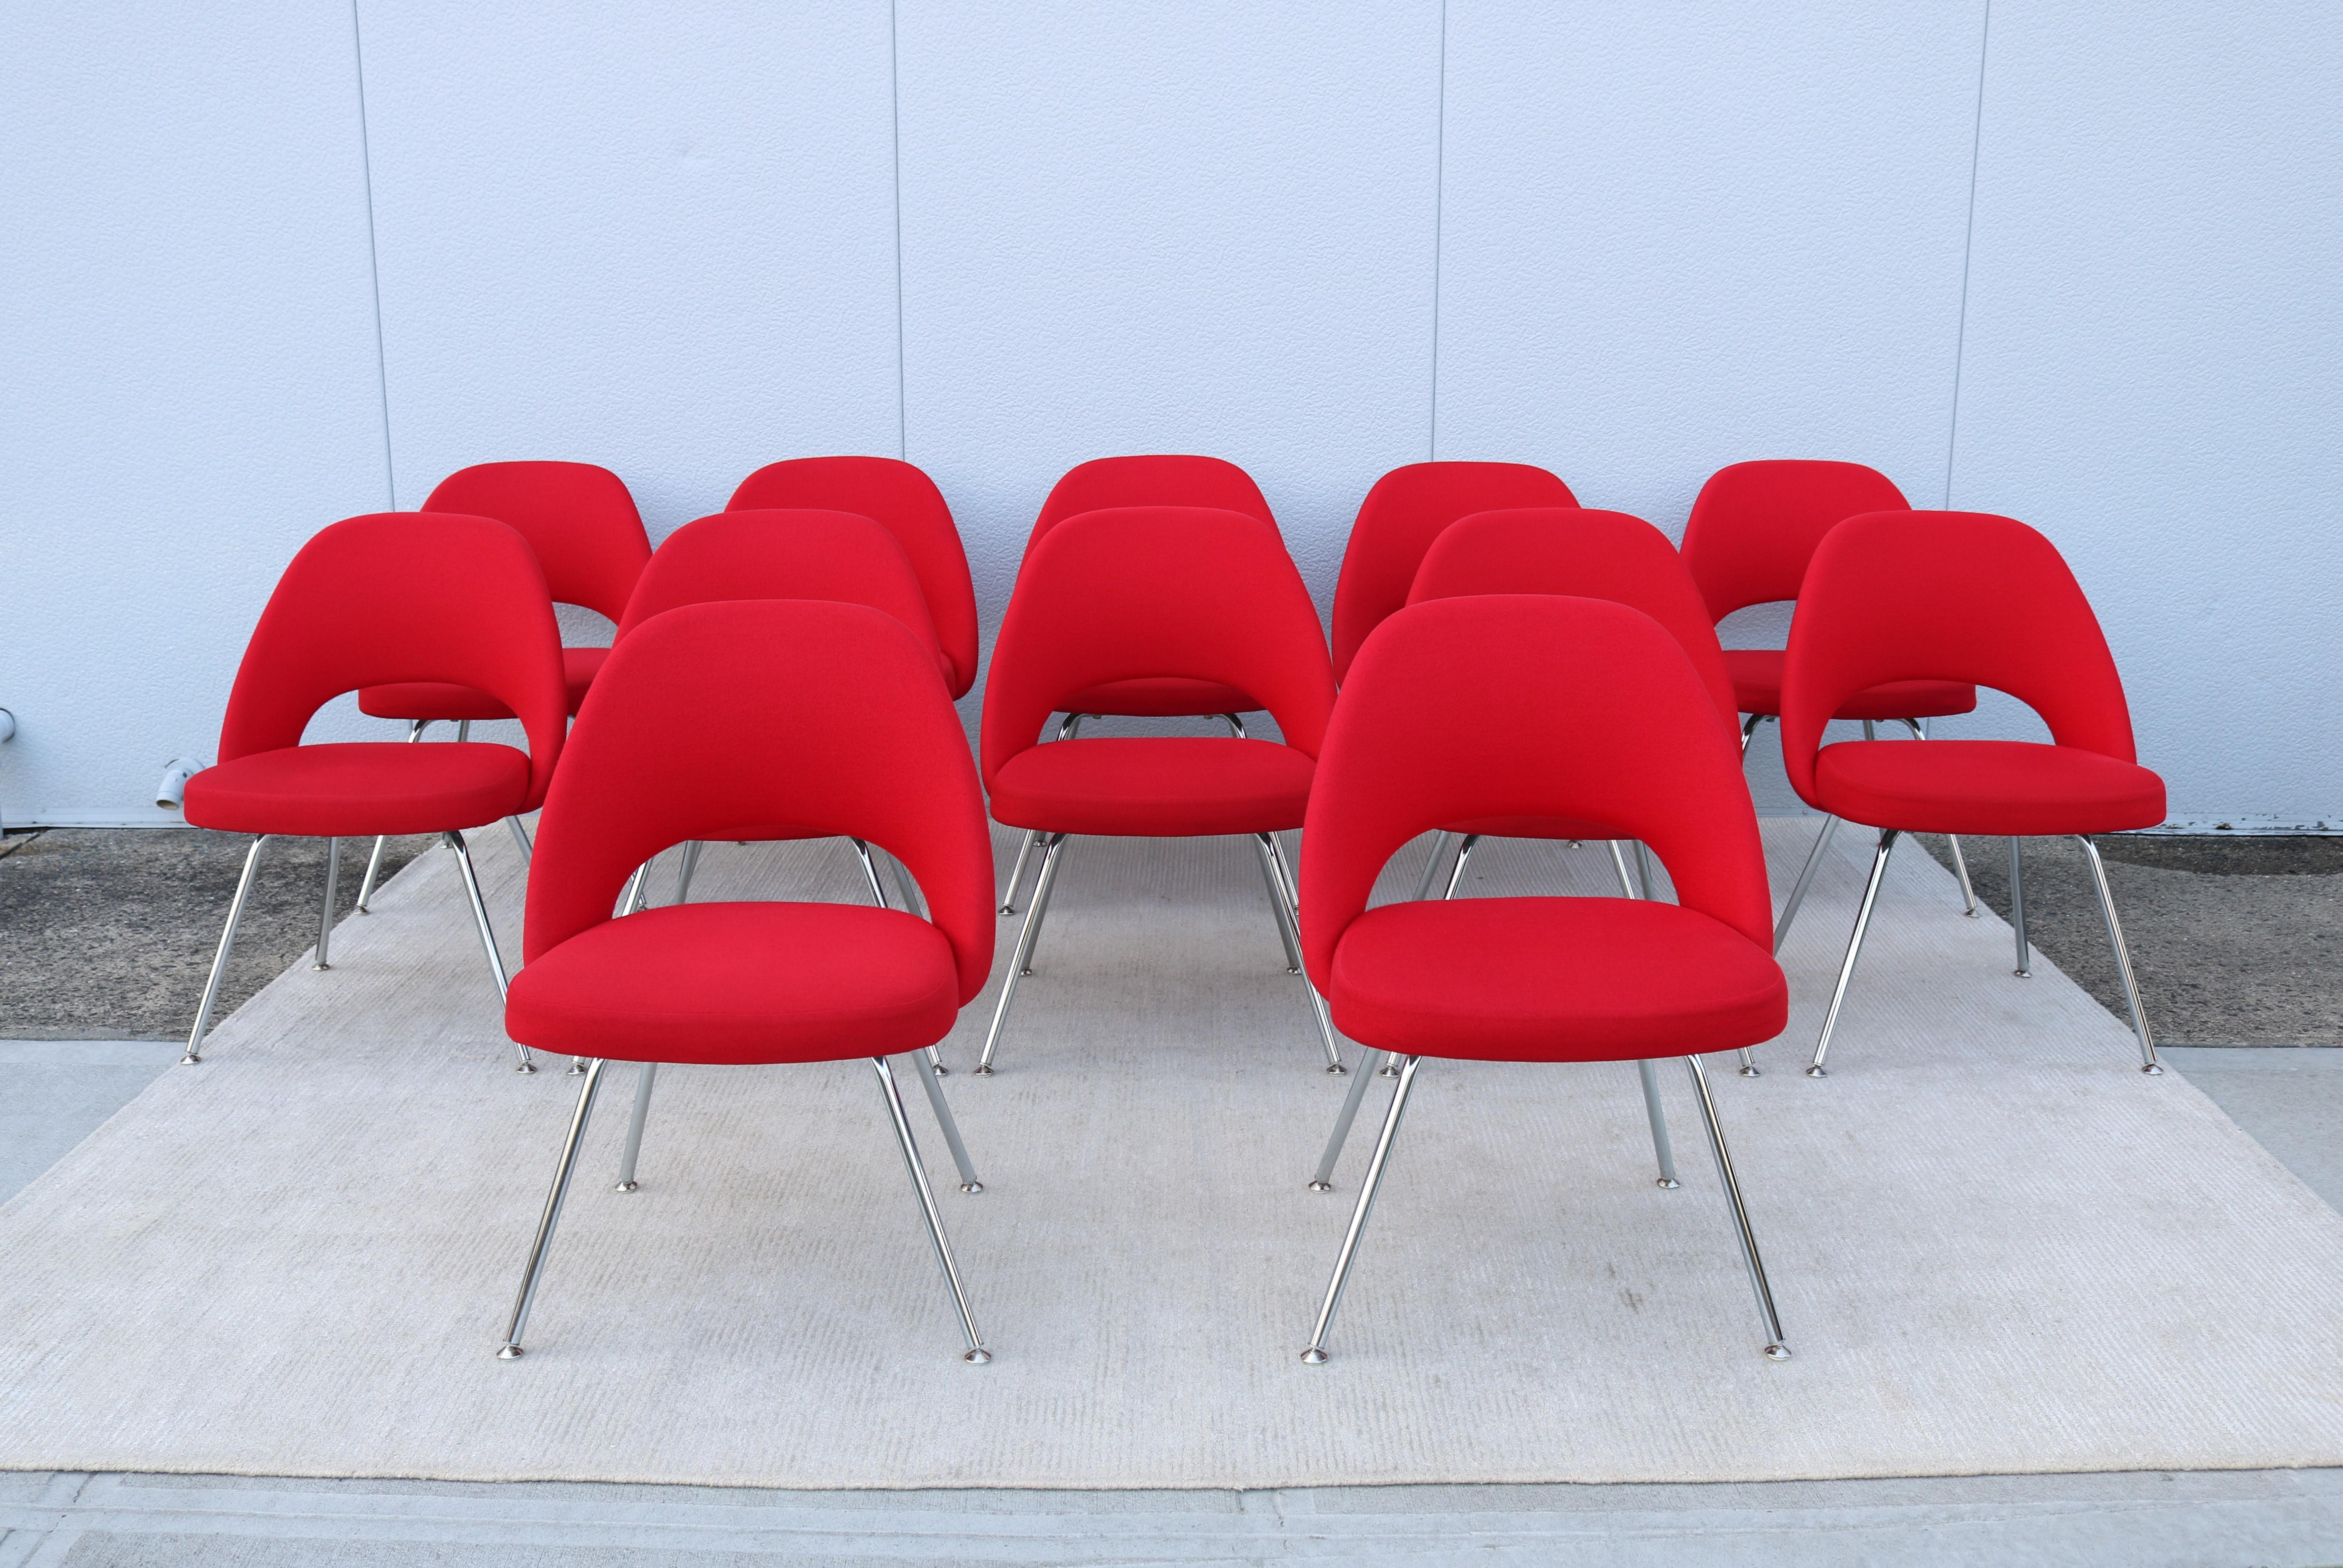 Atemberaubende authentische Mitte des Jahrhunderts modernen Satz von zwölf Saarinen Executive armless Stühle von Knoll.
Einer der beliebtesten Entwürfe von Knoll, der durch die Form seiner Schale höchsten Komfort bietet.
Er wurde 1950 eingeführt und